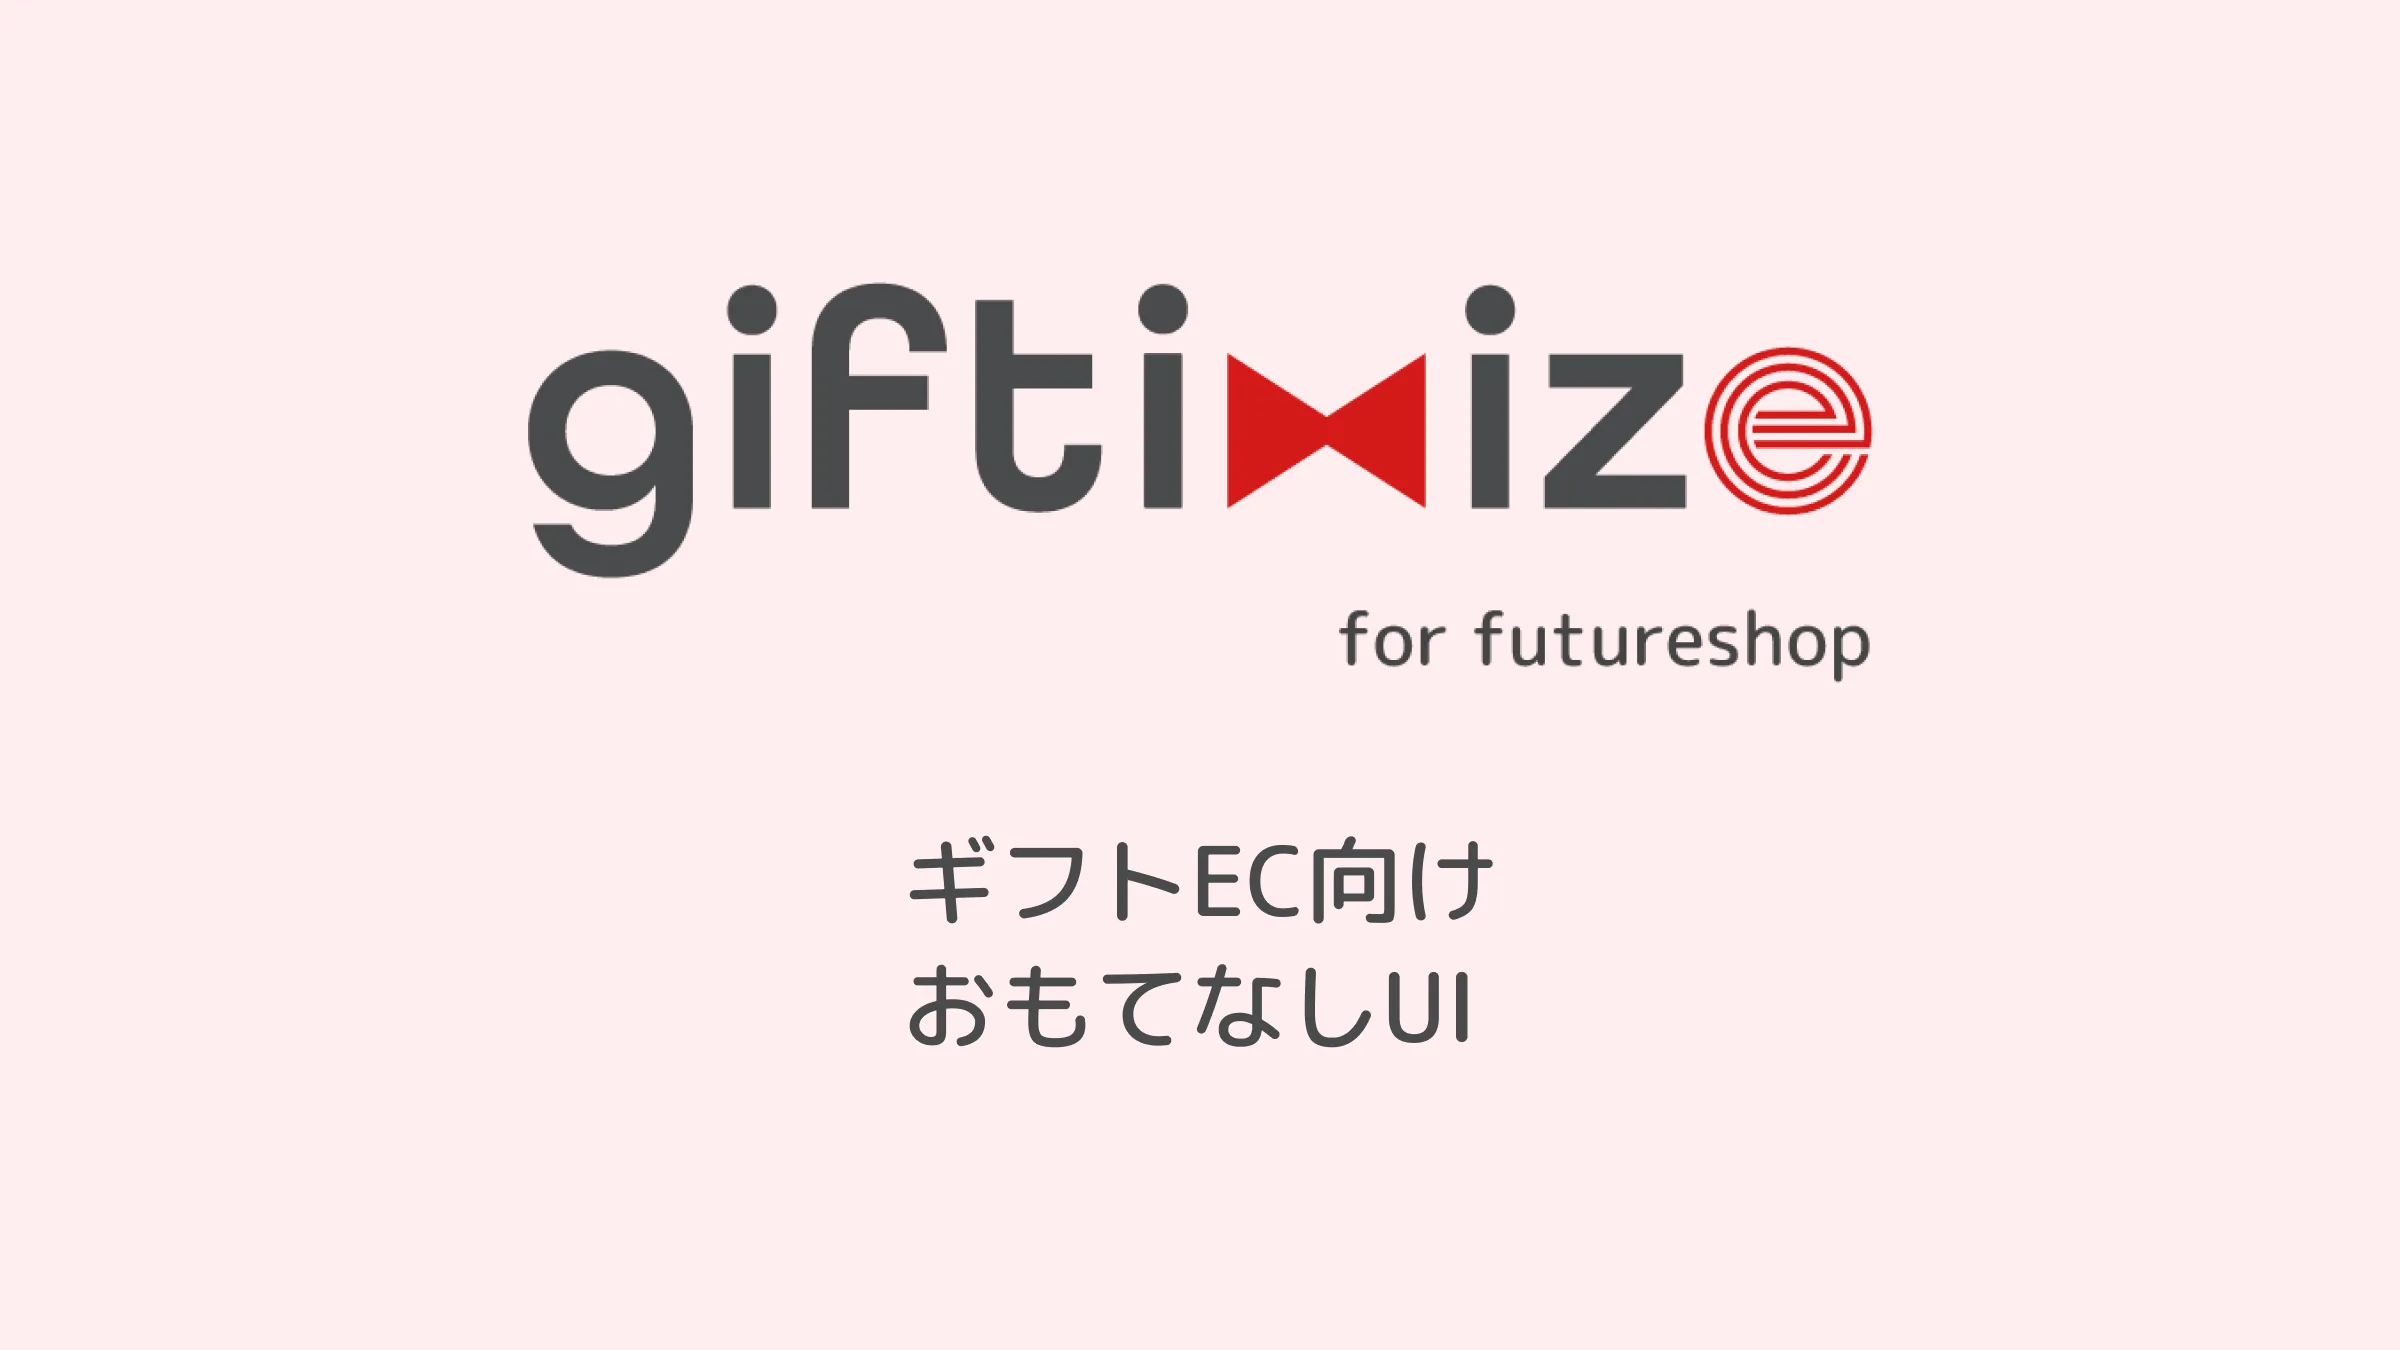 ギフトEC向けおもてなしUI「giftimize for futureshop」の提供を開始